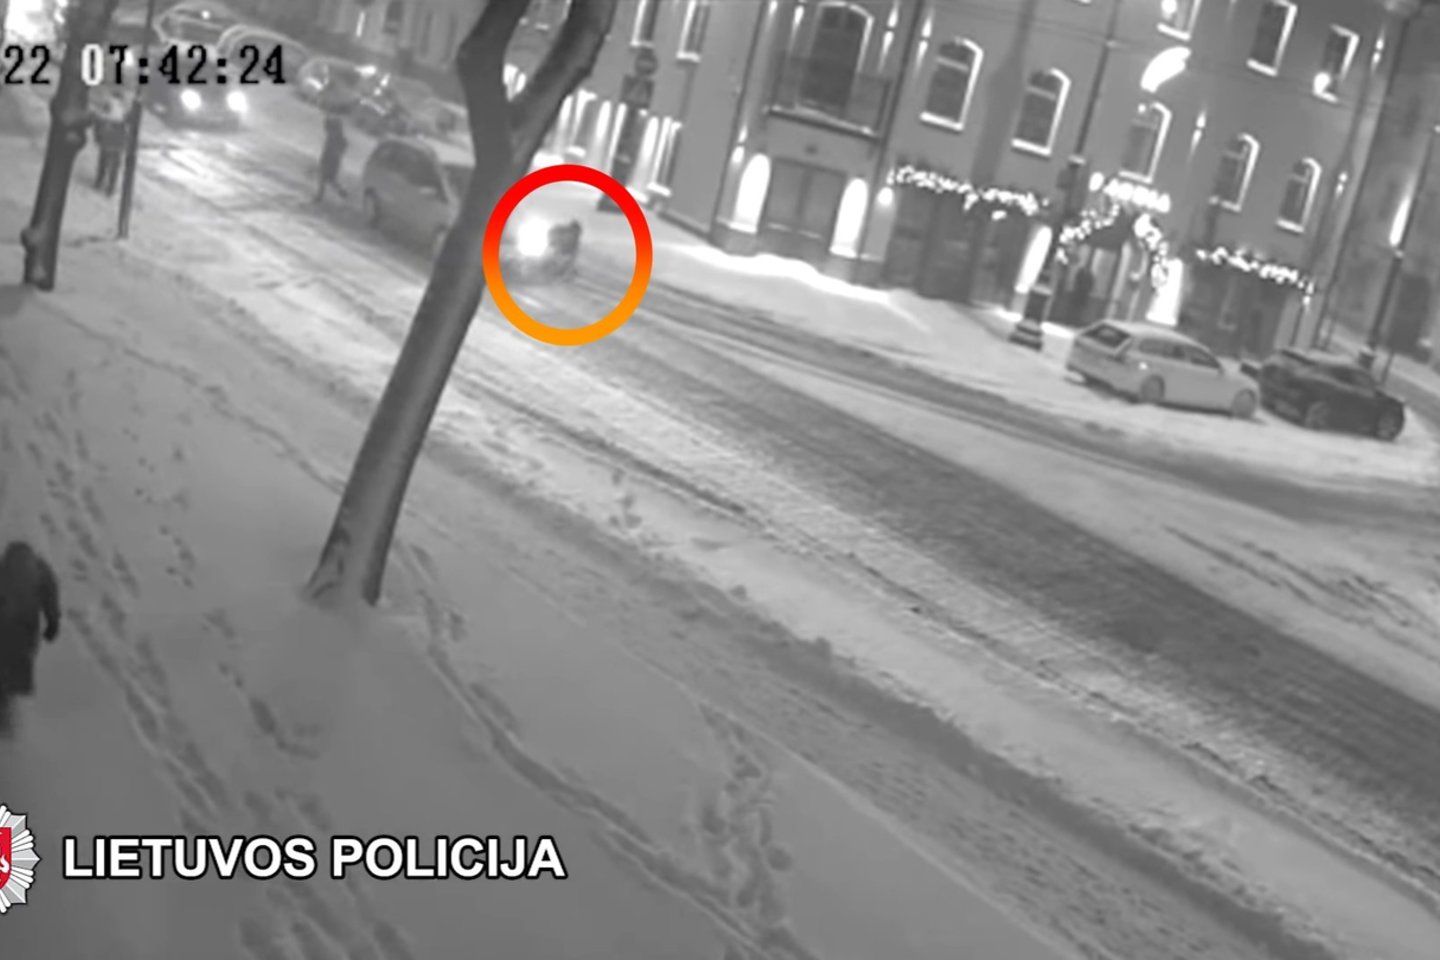  Vilniaus policija ragina atsiliepti pėsčiąją partrenkusį vairuotoją – avarija užfiksavo vaizdo kameros.<br> Stop kadras iš vaizdo medžiagos